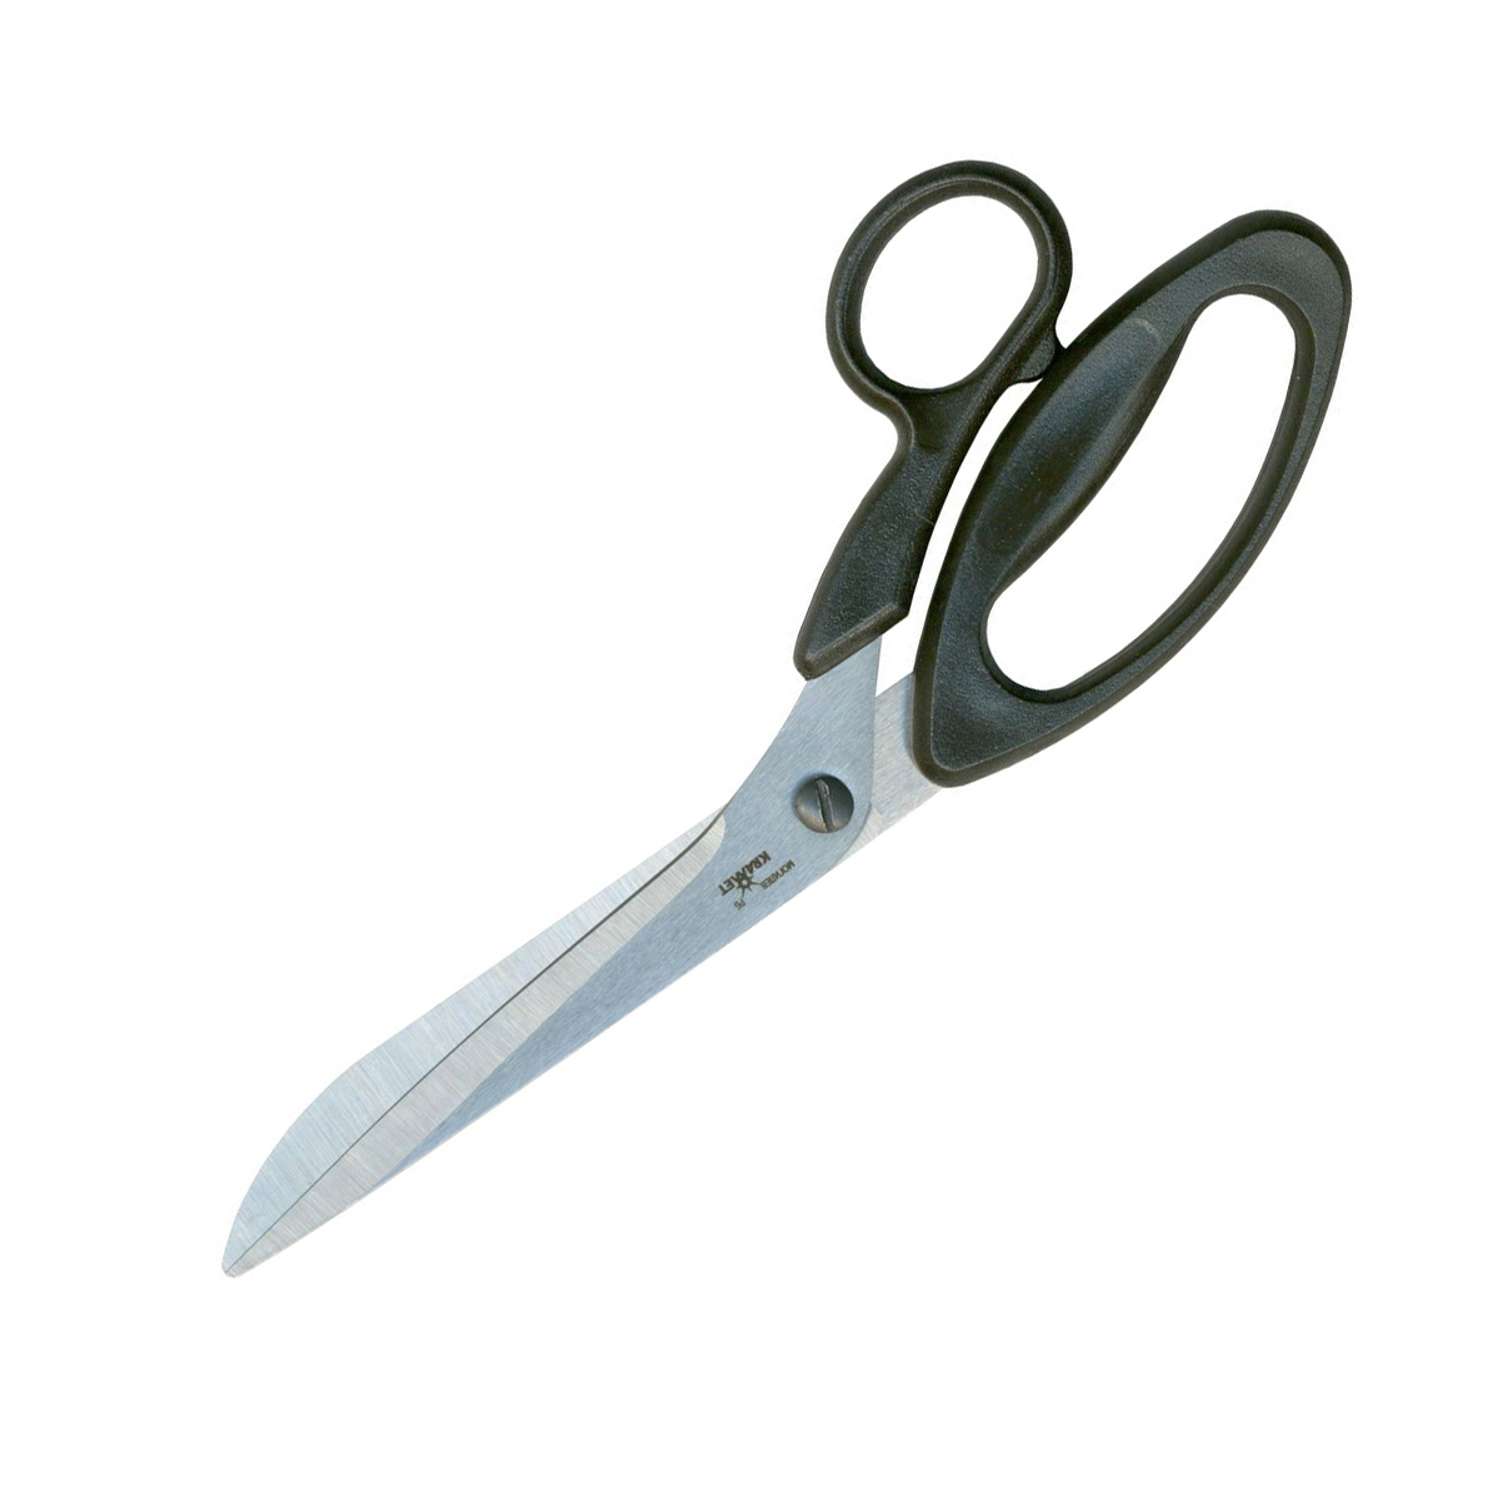 Ножницы закройные KARMET из нержавеющей стали с пластиковыми ручками и винтом для регулировки хода 26 см - фото 2